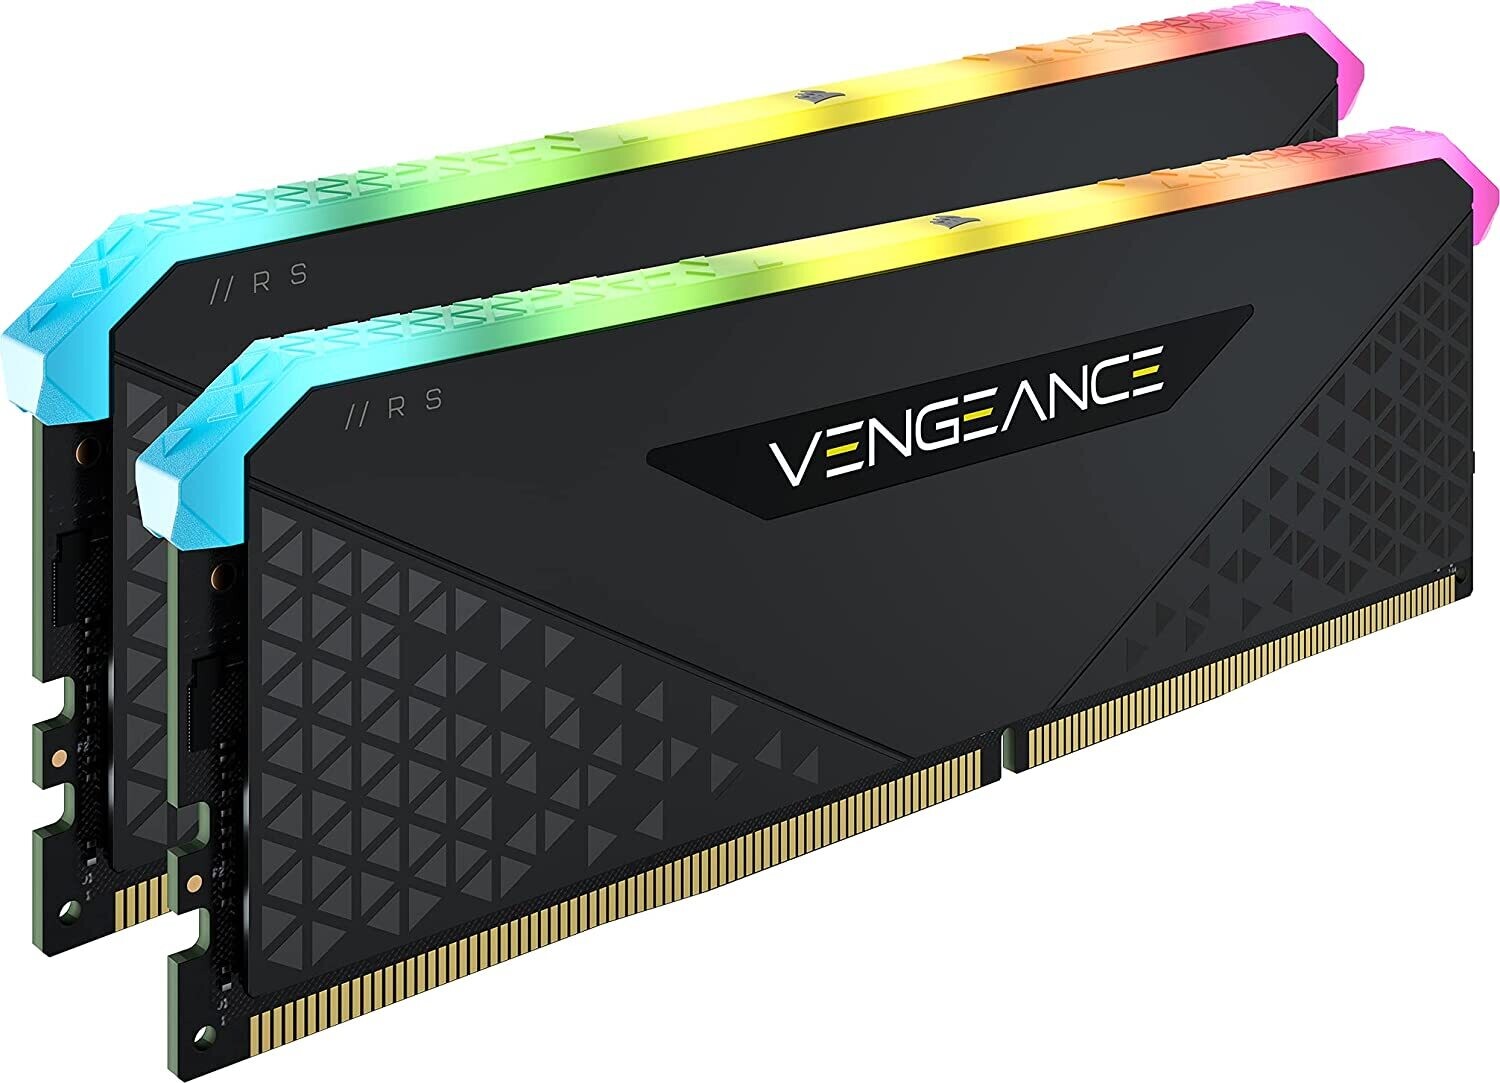 Corsair VENGEANCE® RGB RS 16GB (2 x 8GB) DDR4 DRAM 3200MHz C16 Memory Kit CMG16GX4M2E3200C16